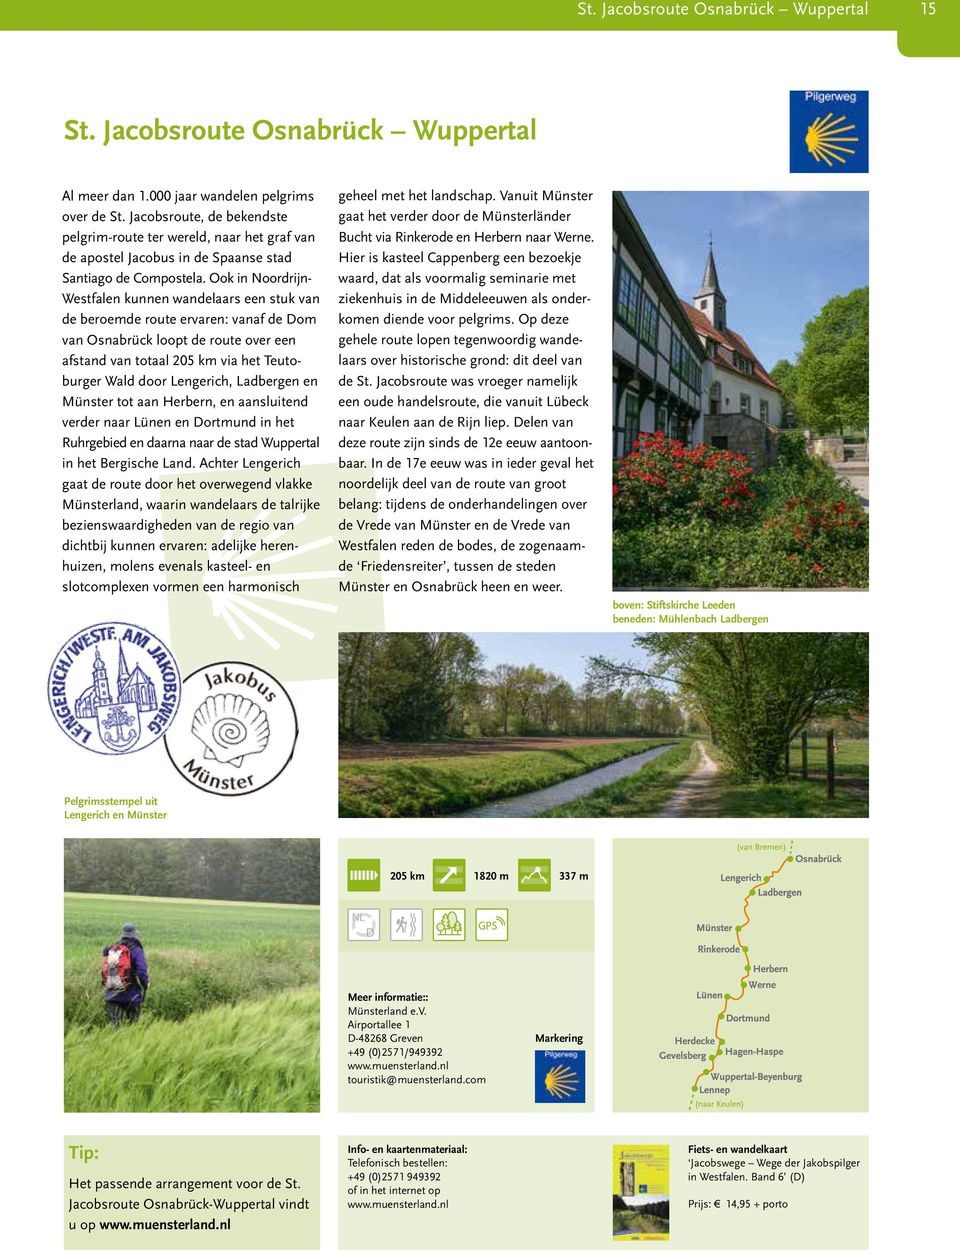 Ook in Noordrijn- Westfalen kunnen wandelaars een stuk van de beroemde route ervaren: vanaf de Dom van Osnabrück loopt de route over een afstand van totaal 205 km via het Teutoburger Wald door